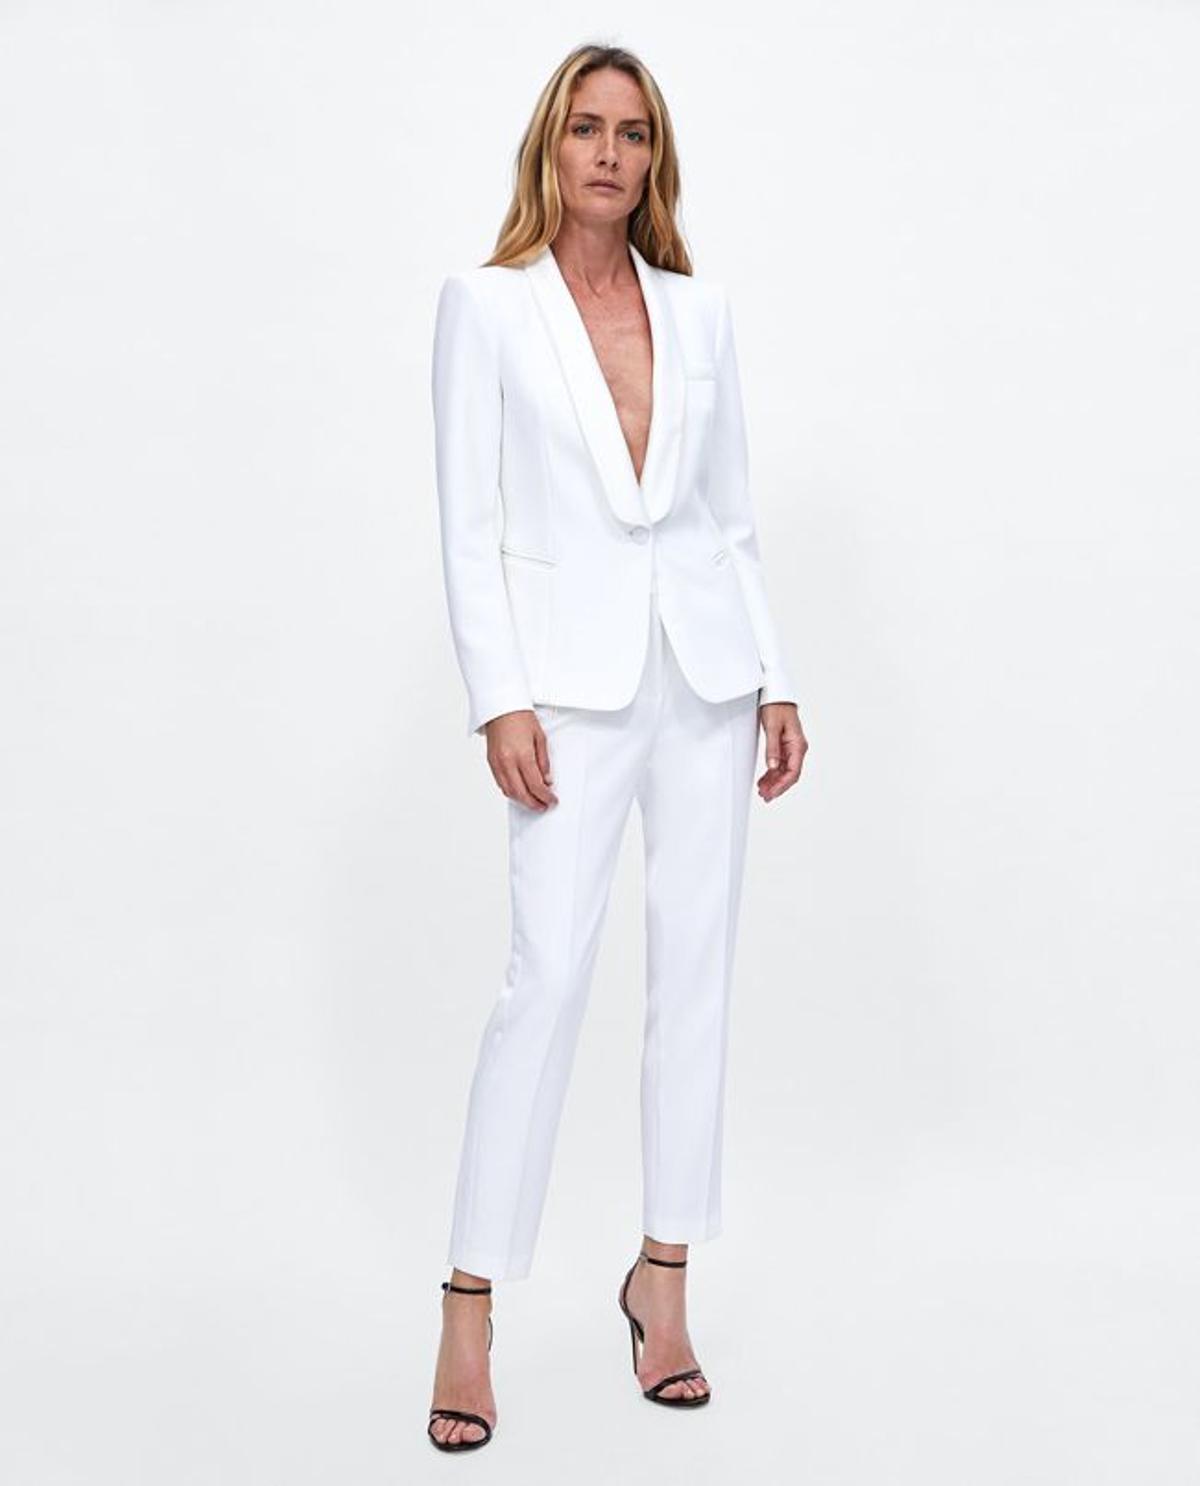 Moda 'timeless' de Zara: esmoquin blanco